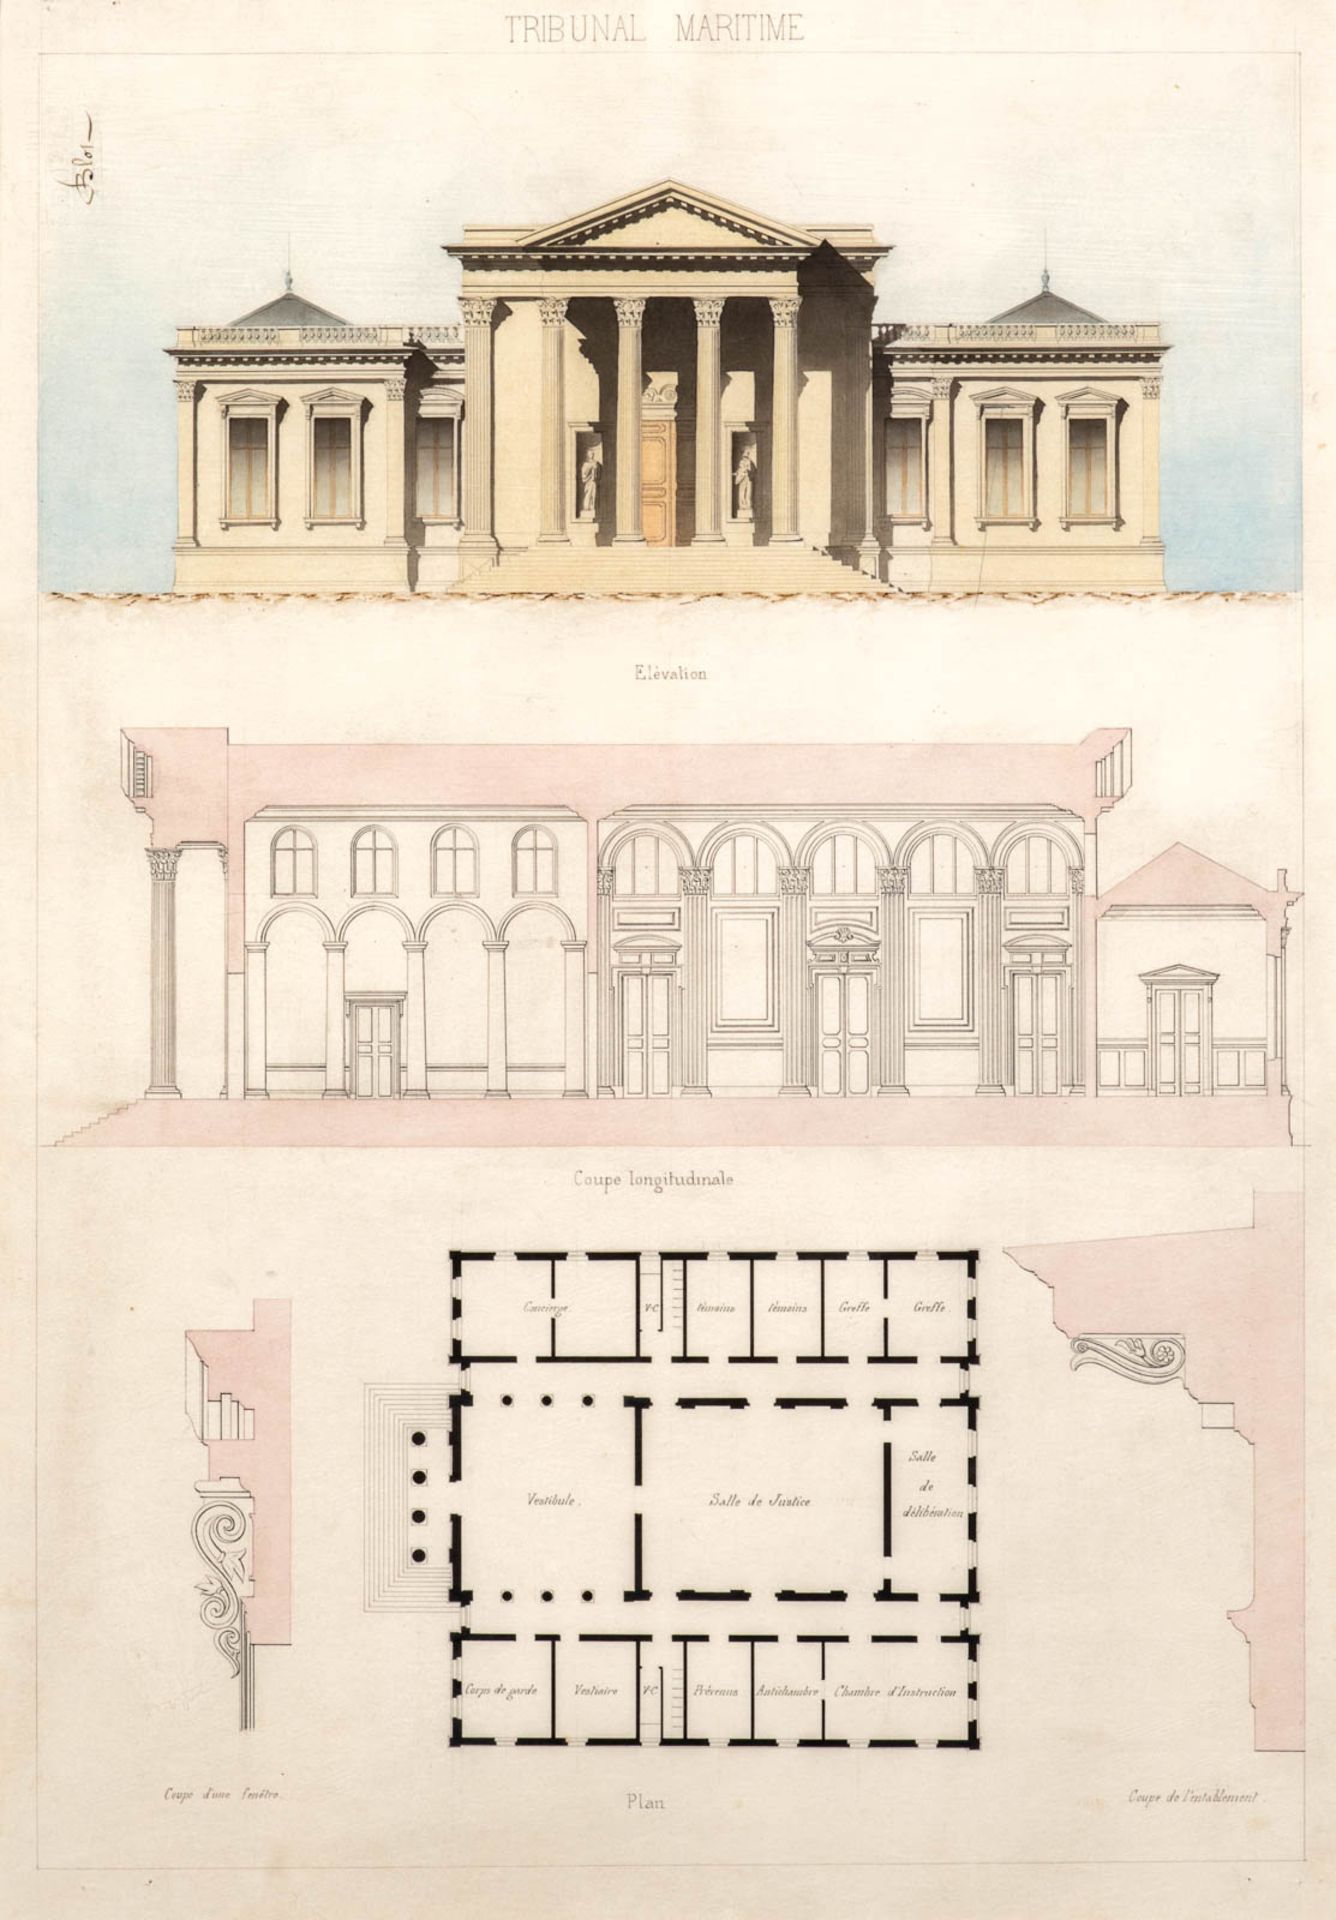 BLOT, architecte (?) et tampon EPC 1870-1891 - Tribunal maritime, élévation, [...]